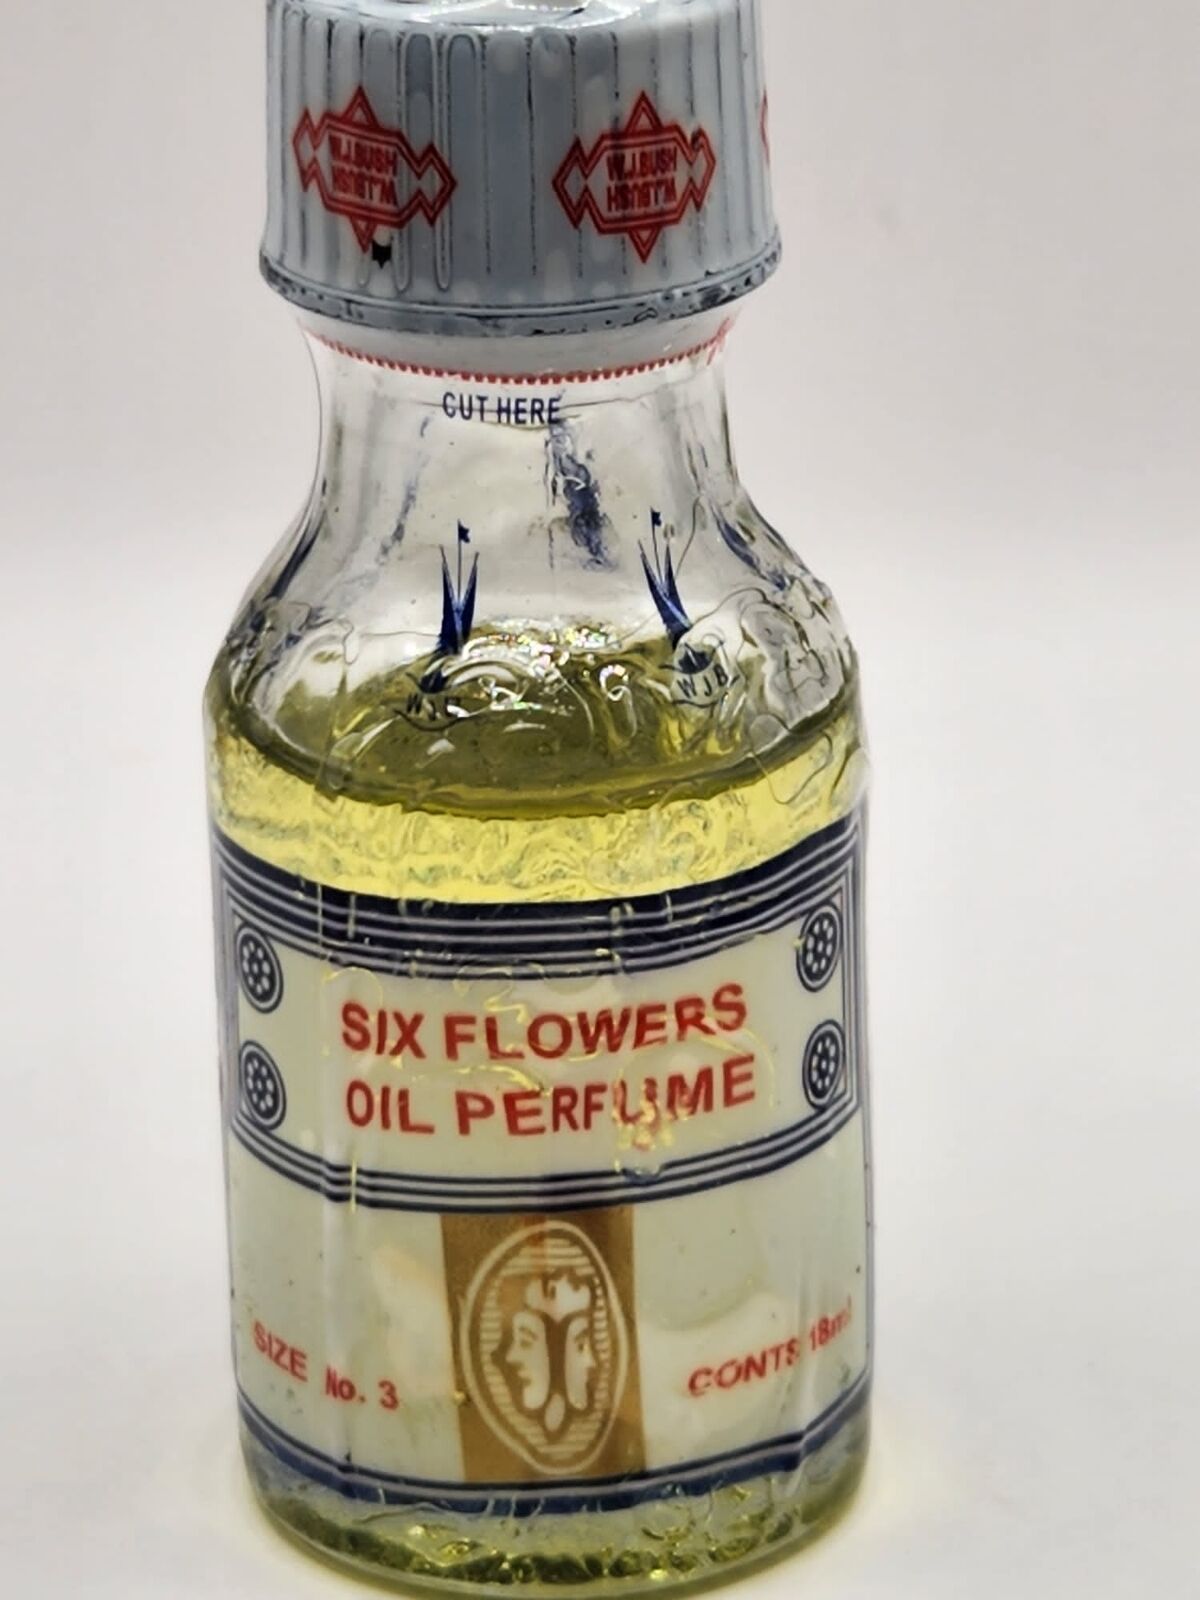 Six Flowers Oil Perfume.